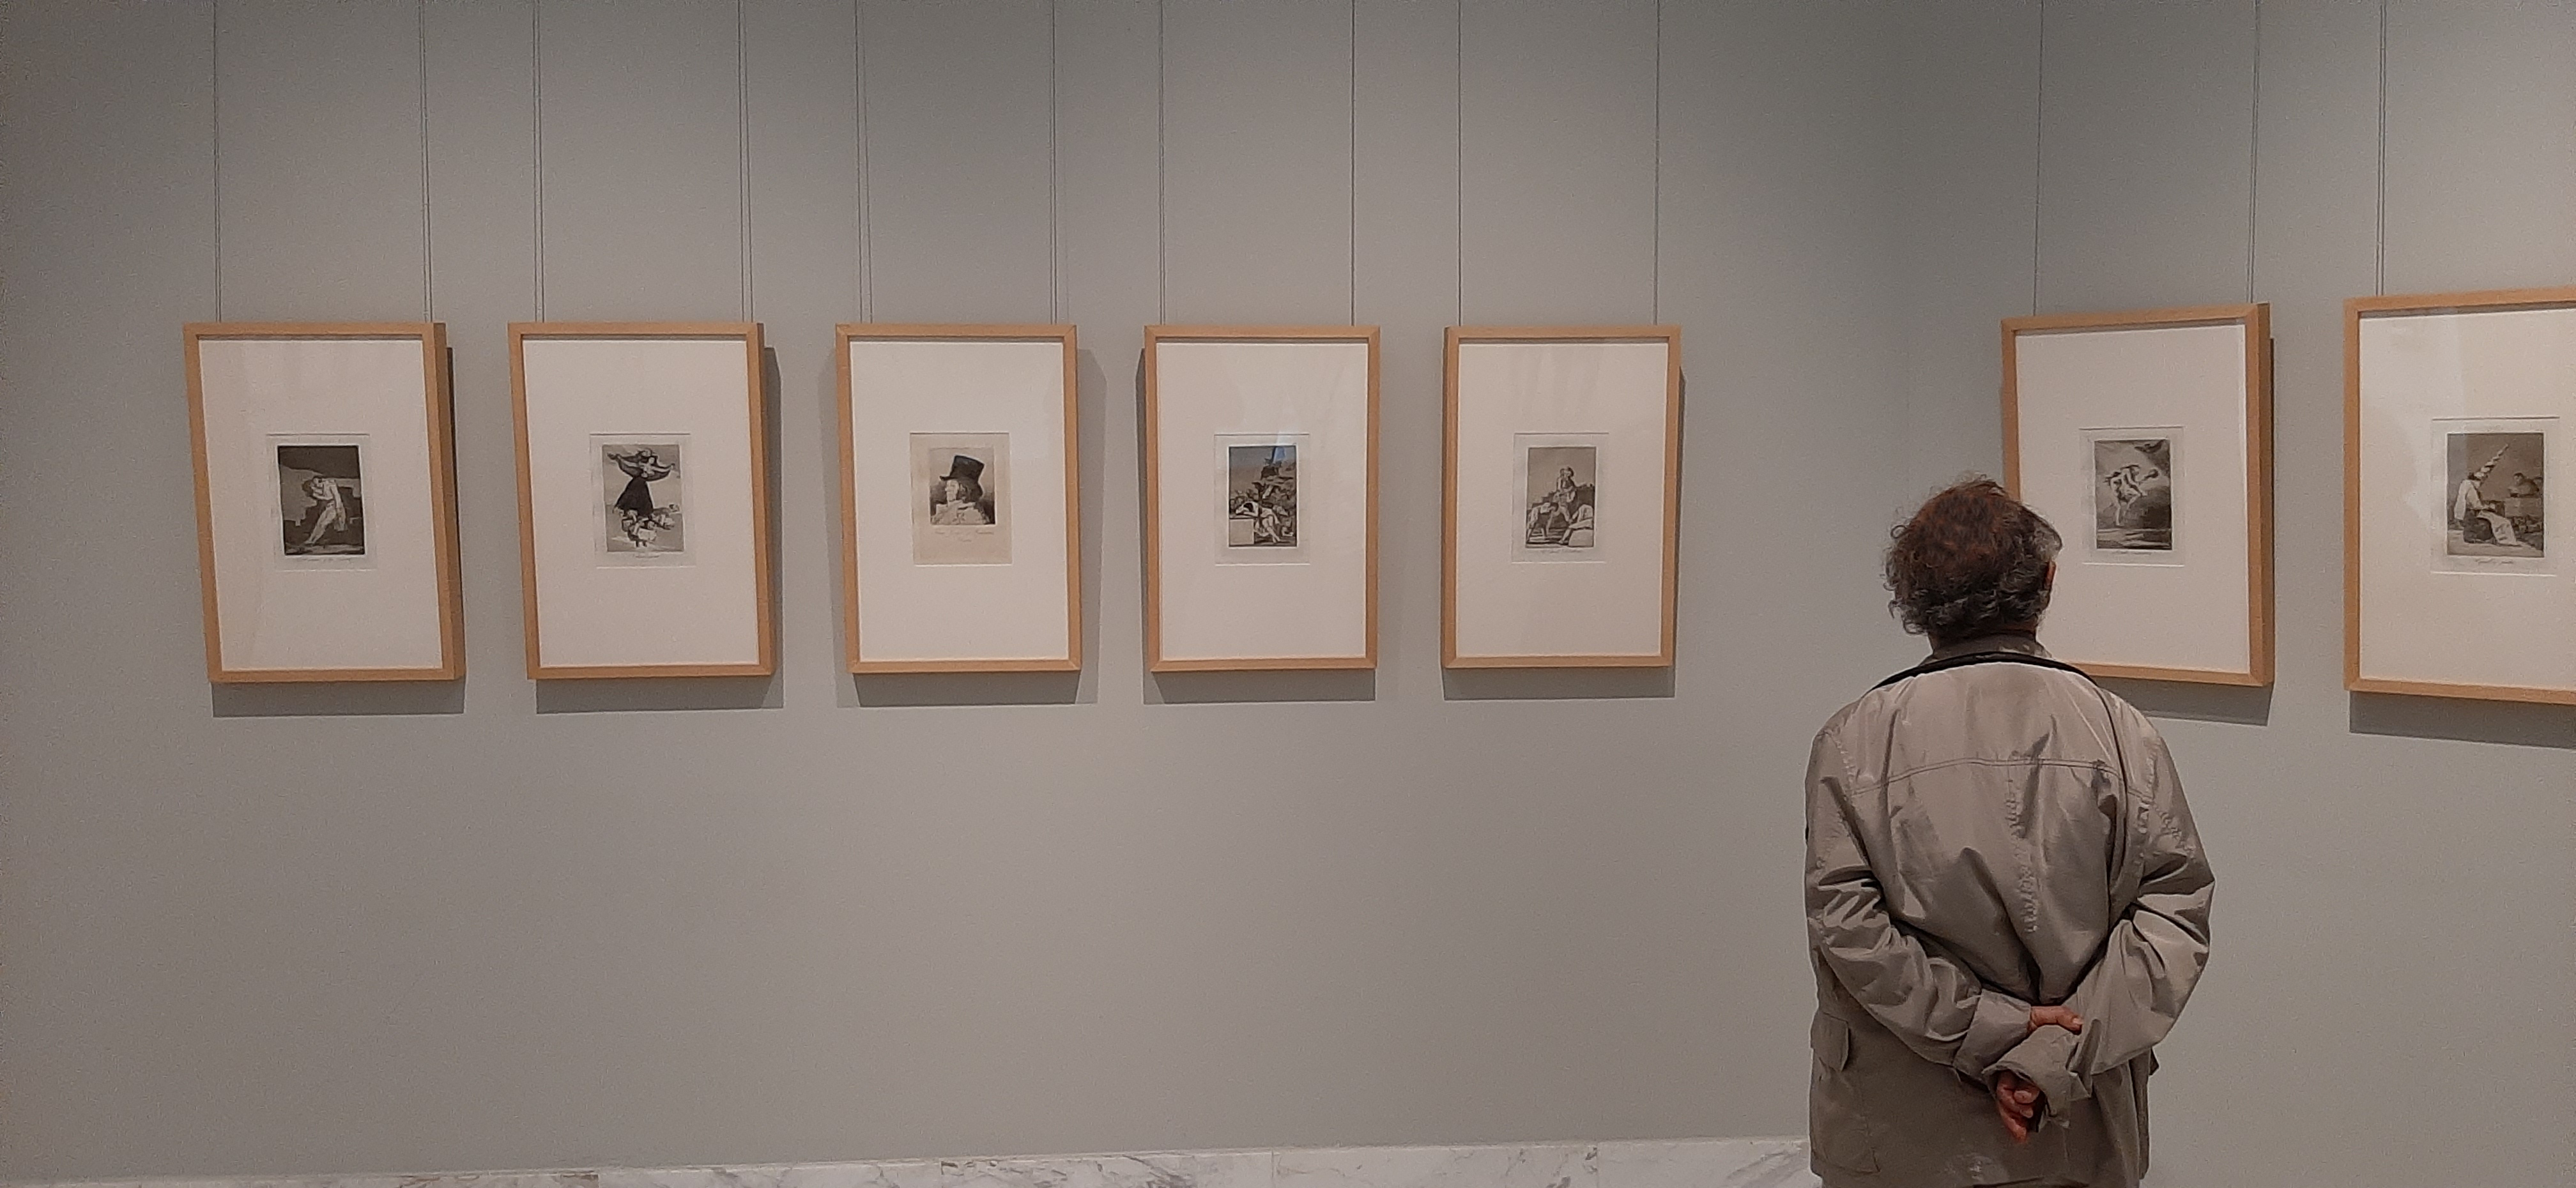 El Museo de Bellas Artes de València recibe la donación de la serie completa de los 'Caprichos' de Goya de 1868